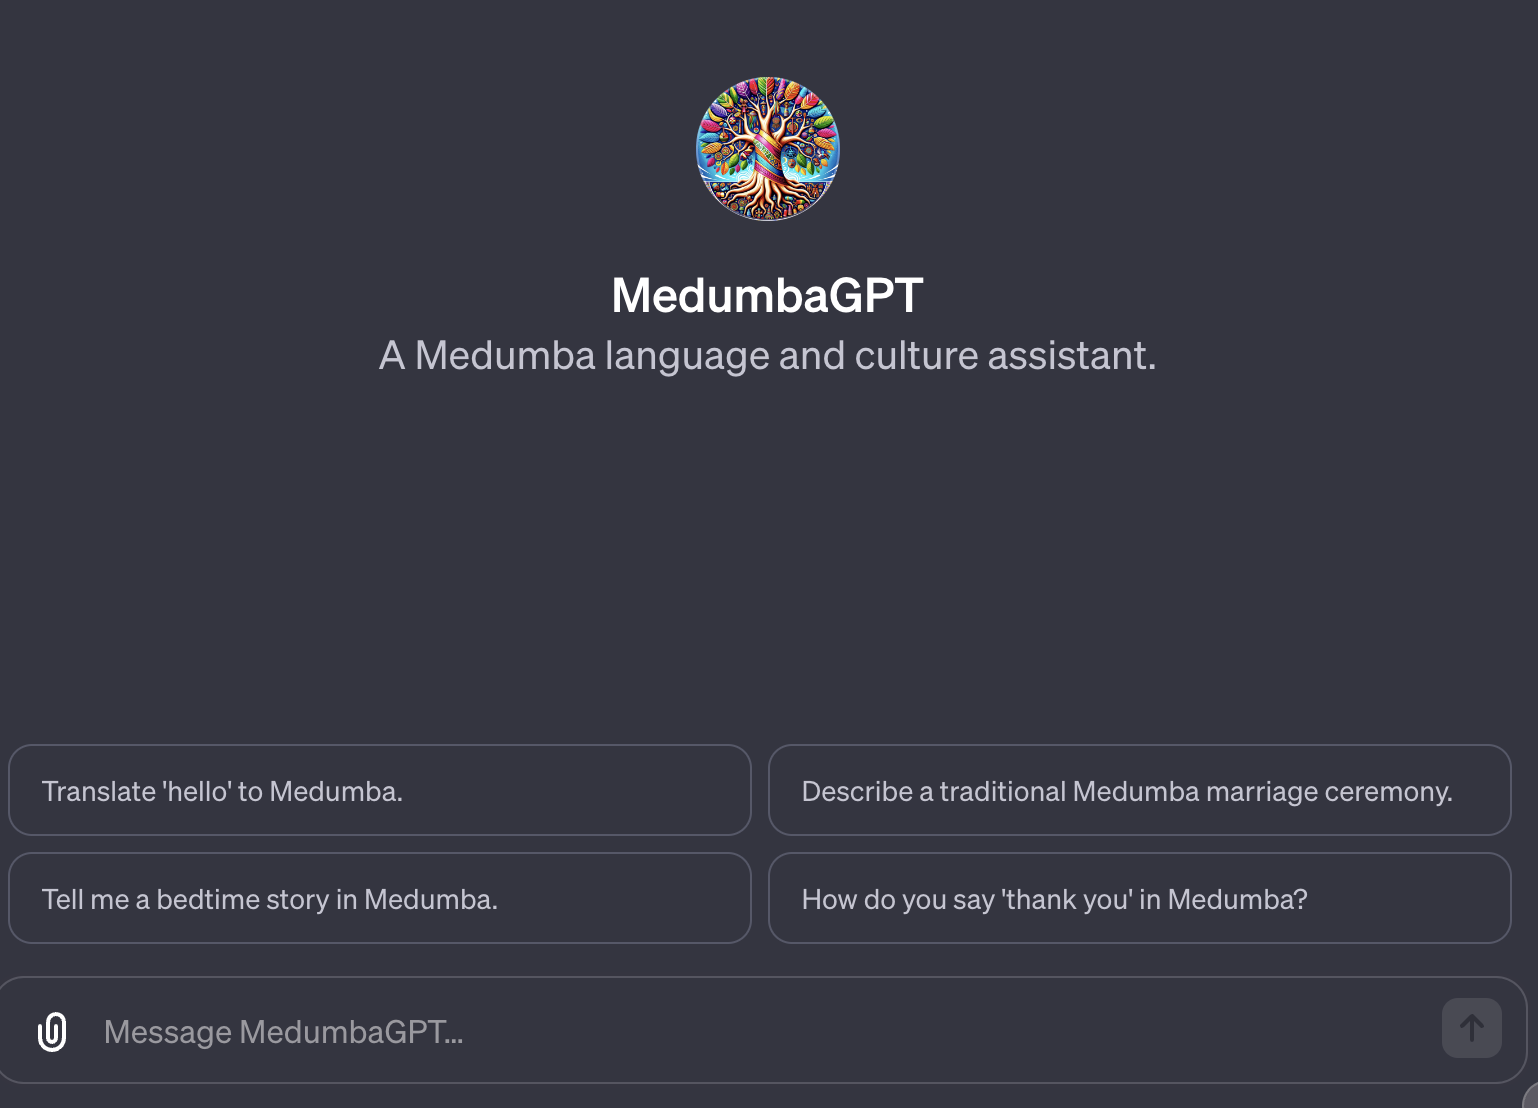 Medumba GPT: A Medumba Language and Culture Assistant